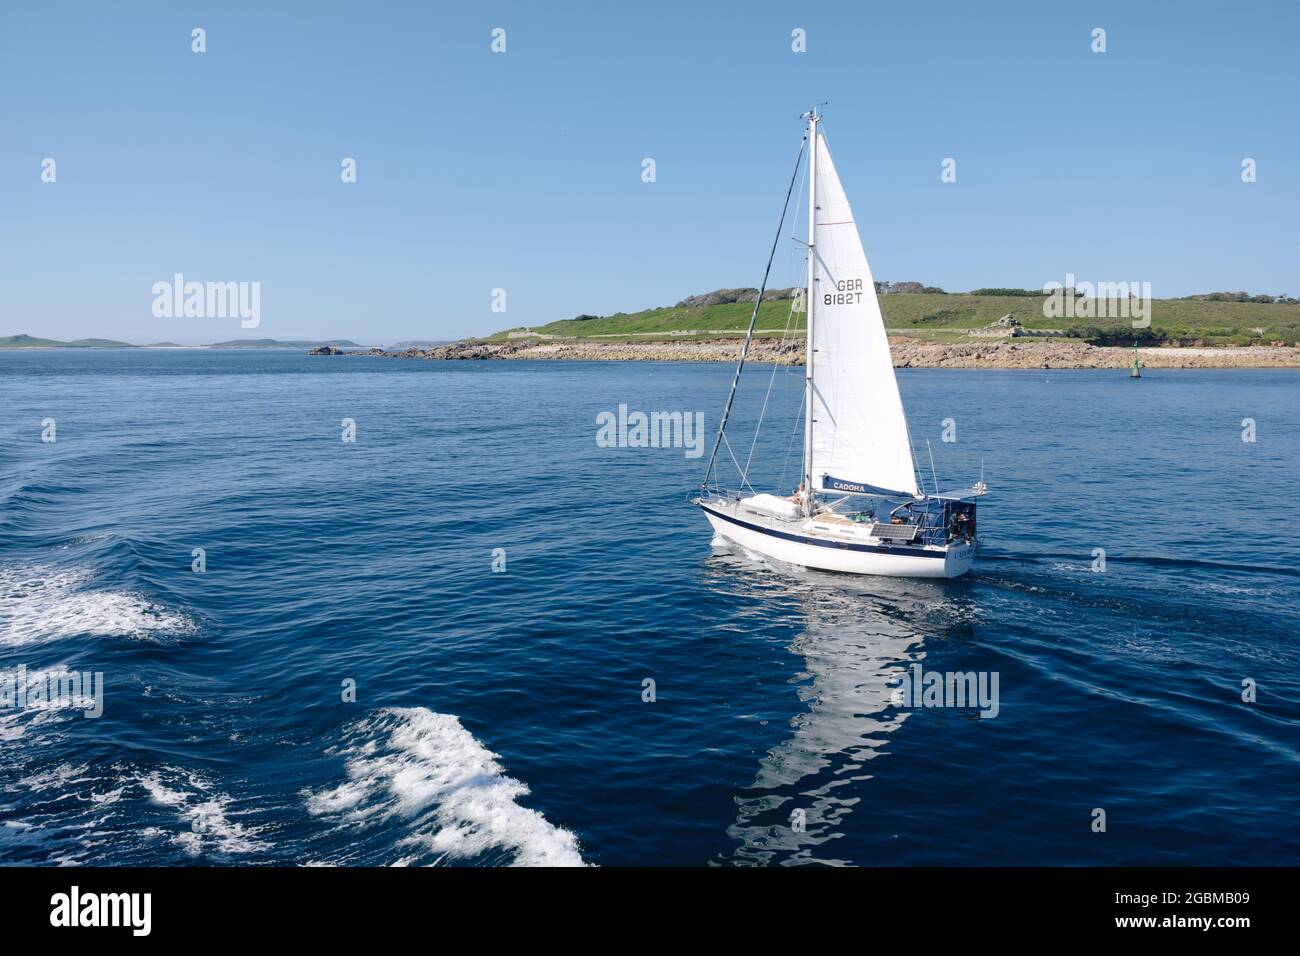 Ein Boot vor der Küste der Insel St. Mary, von der Fähre Scillonian III aus gesehen, Isles of Scilly, Cornwall, England, Großbritannien, Juli 2021 Stockfoto